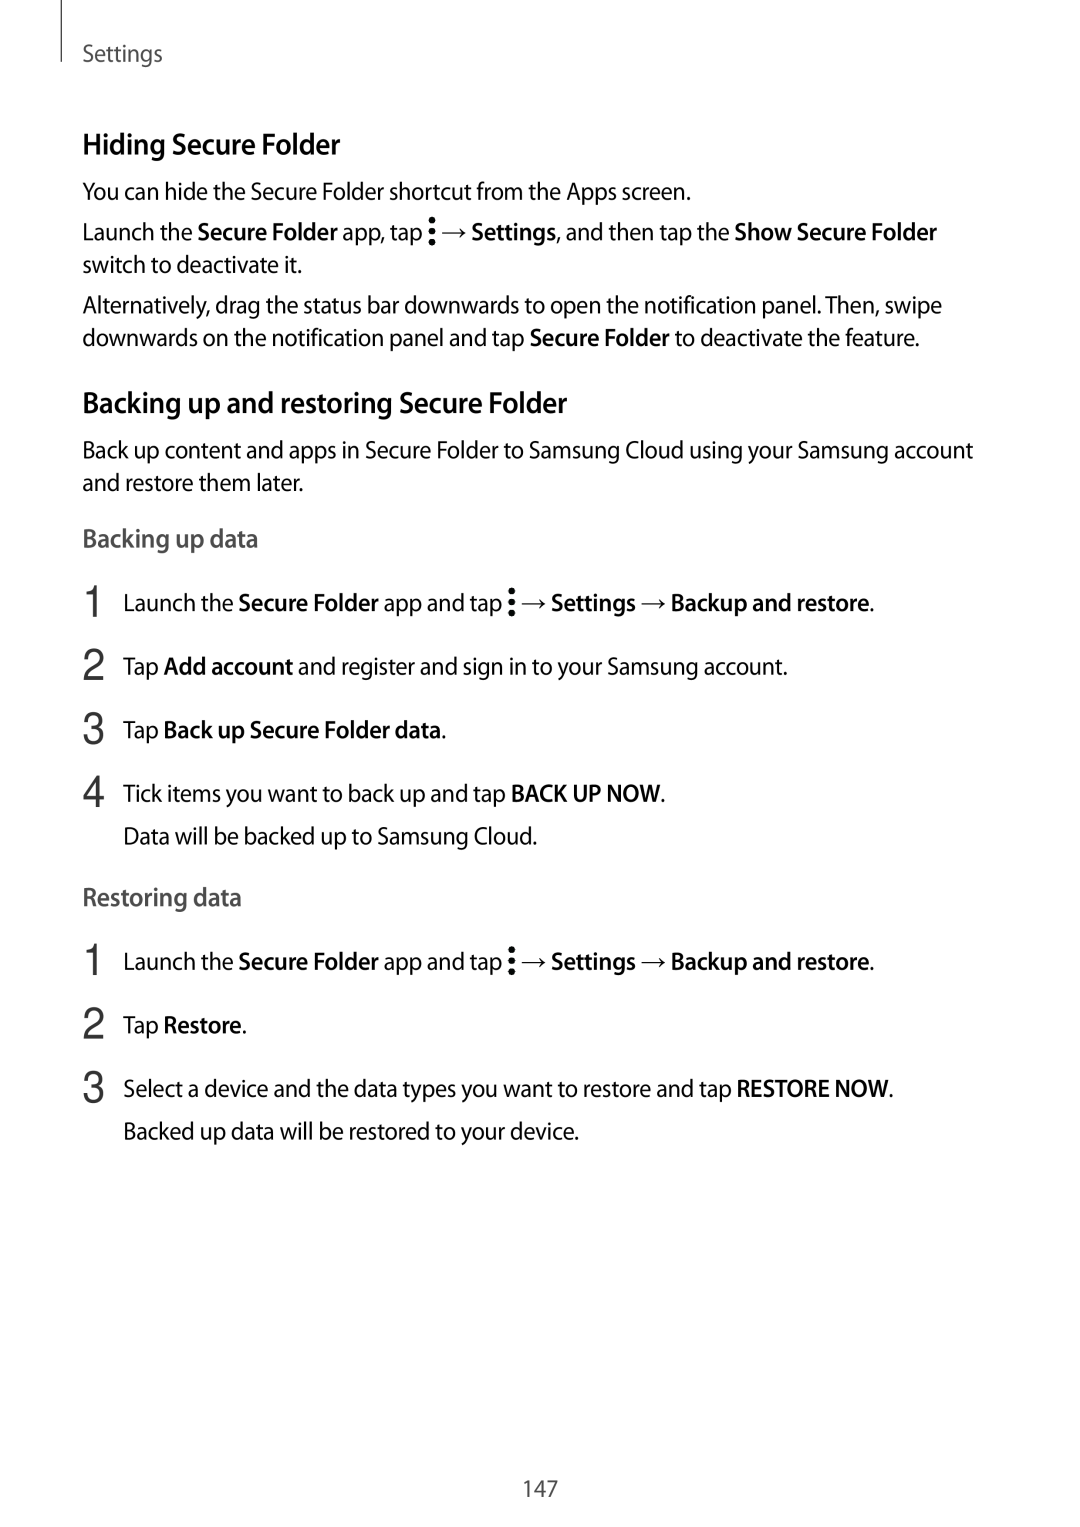 Samsung SM-A520FZBDKSA manual Hiding Secure Folder, Backing up and restoring Secure Folder, Backing up data, Restoring data 